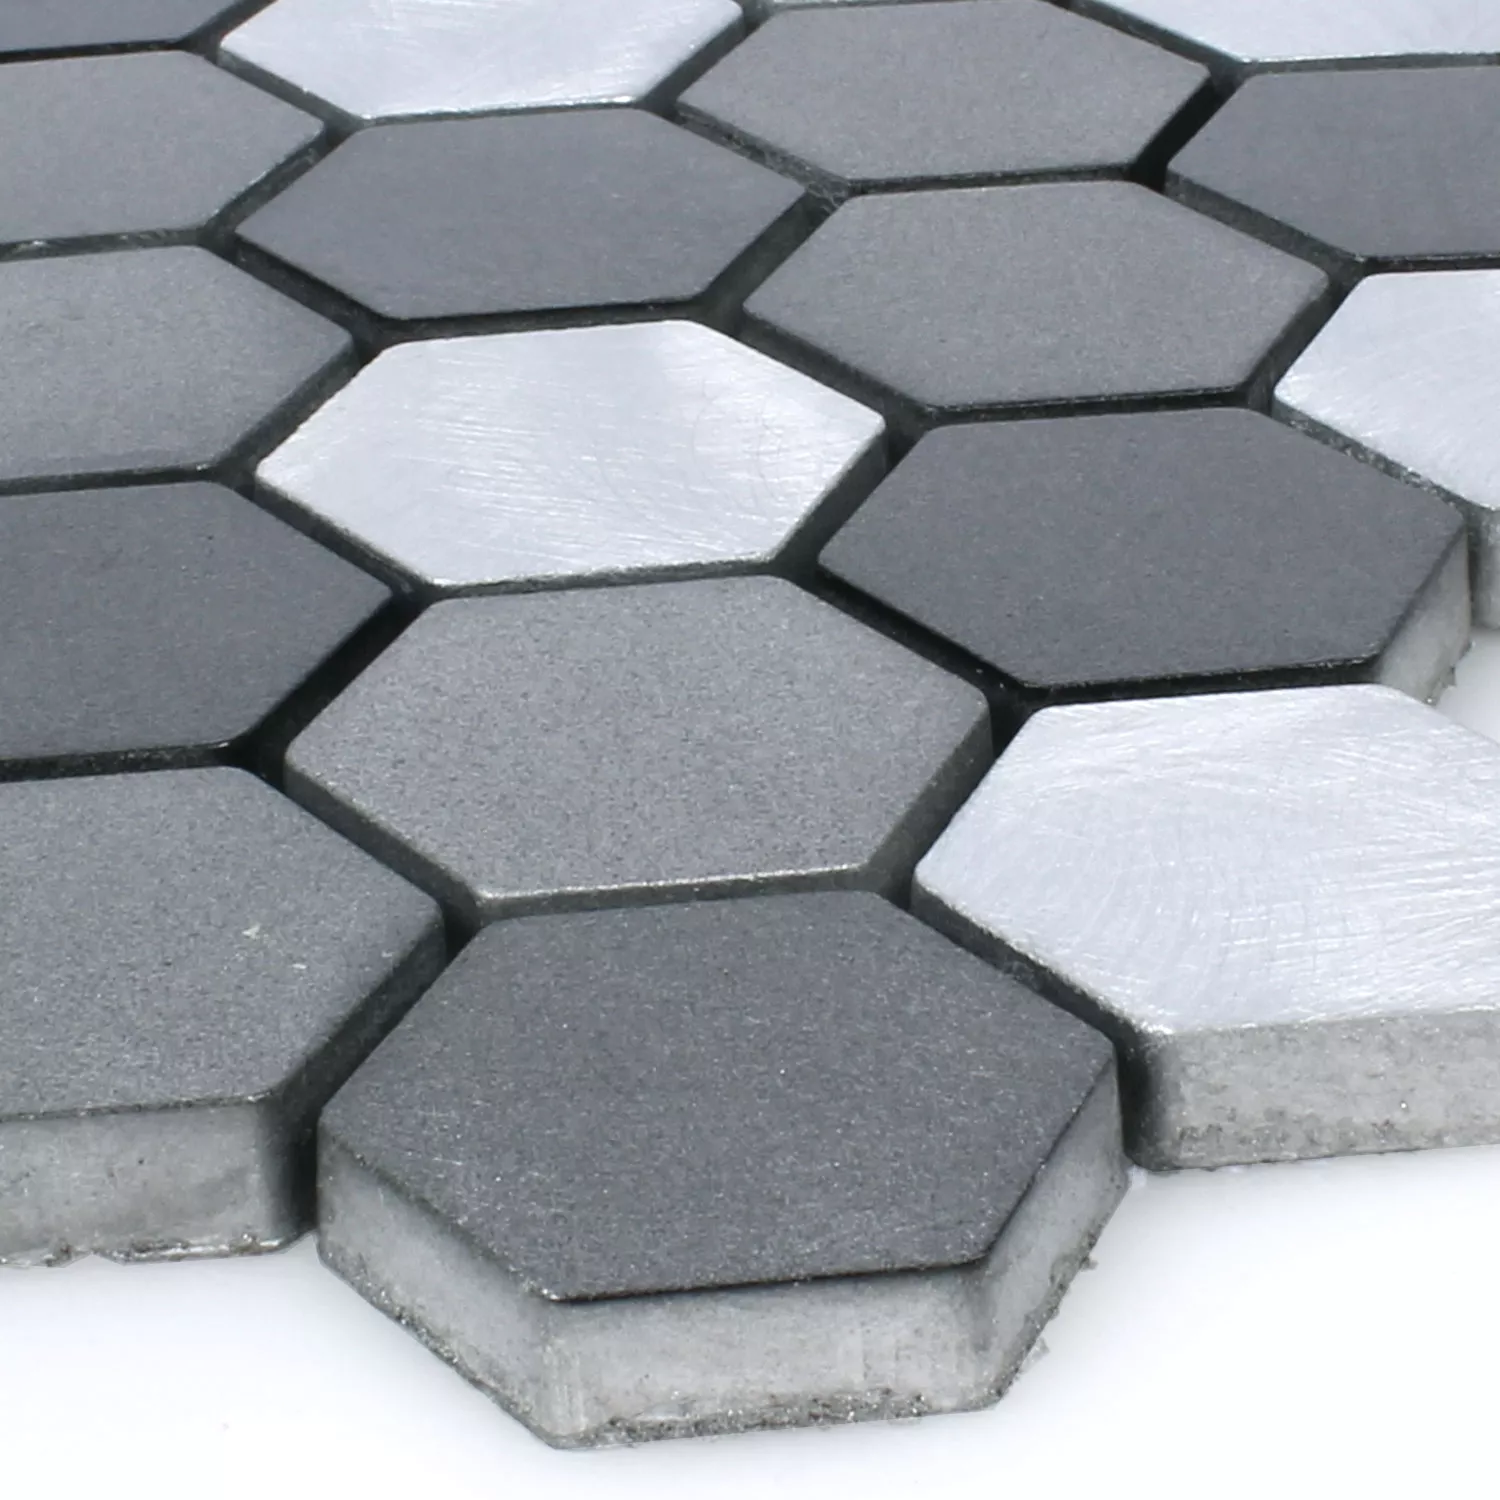 Mosaik Fliser Aluminium Apache Hexagon Sort Sølv